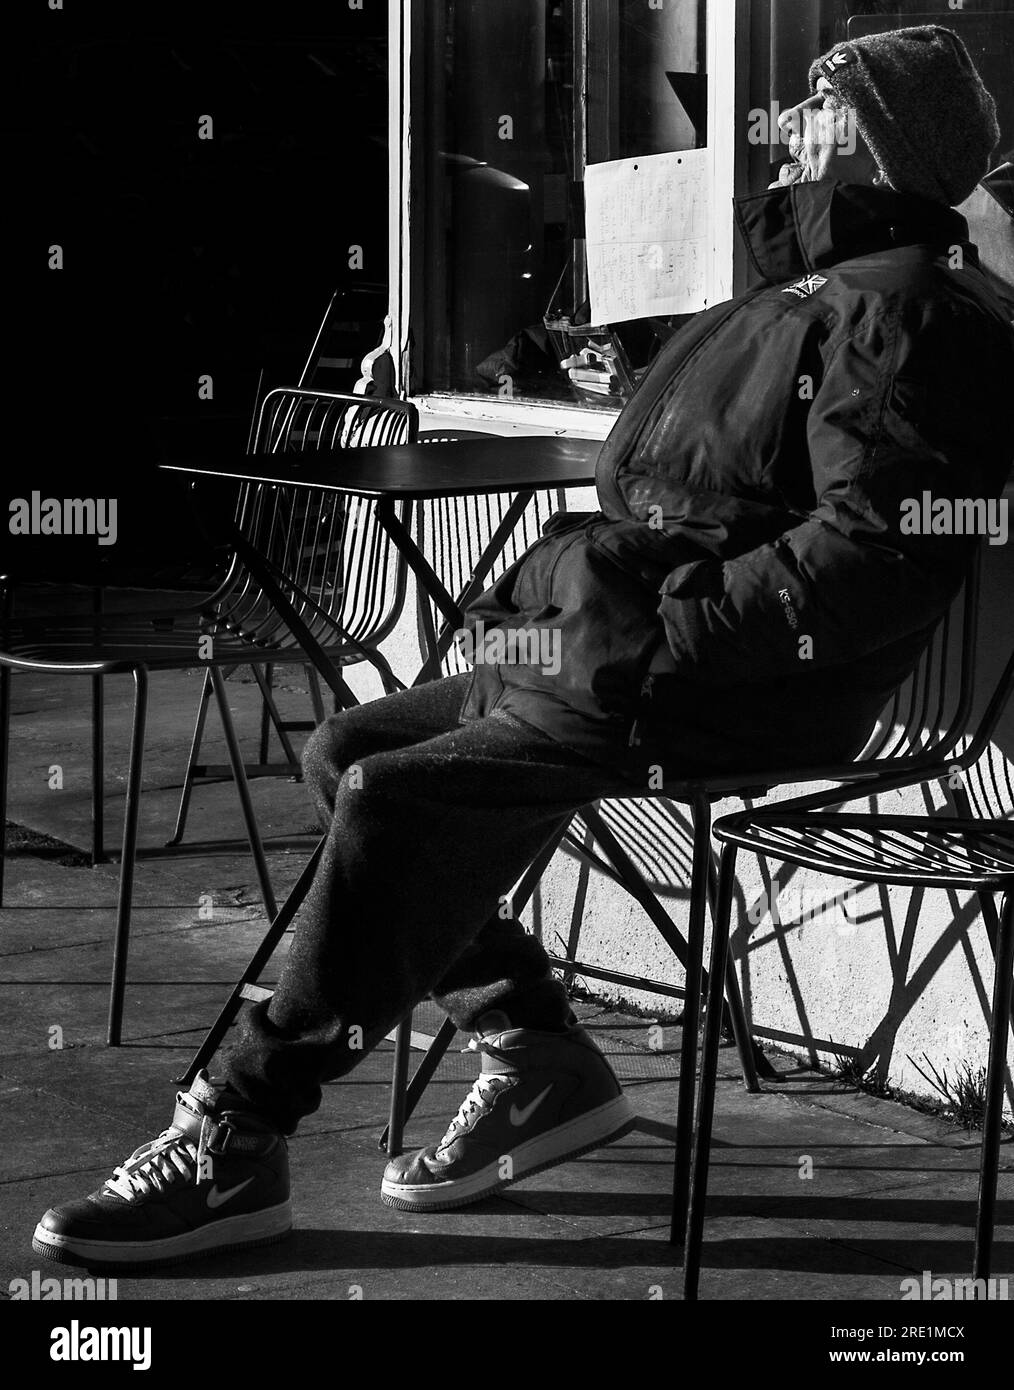 hombre viejo en la calle de café sentado tomando el sol en la luz del sol del invierno Foto de stock